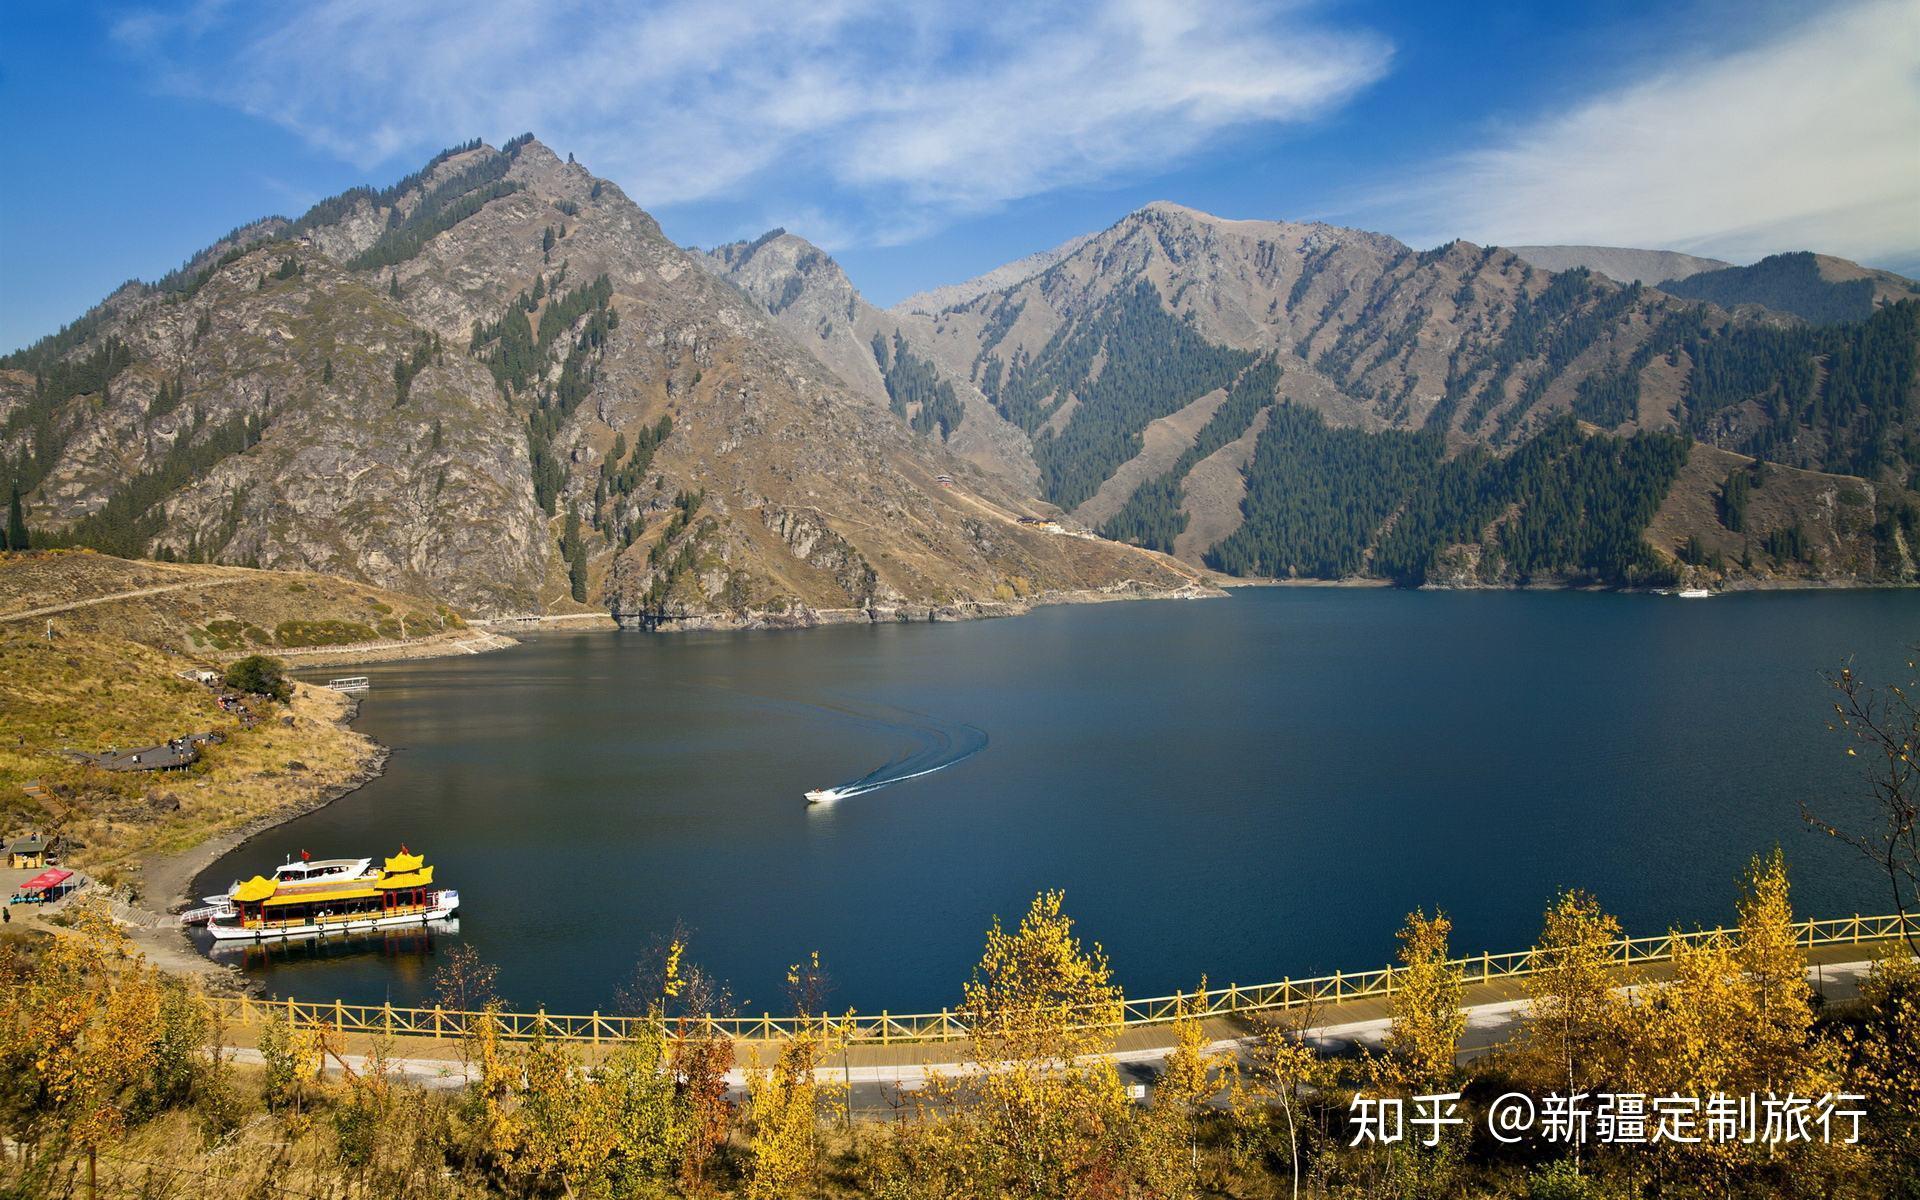 游客在新疆天山天池目击「银色水怪」 「感觉可能有15米长」 | 星岛日报